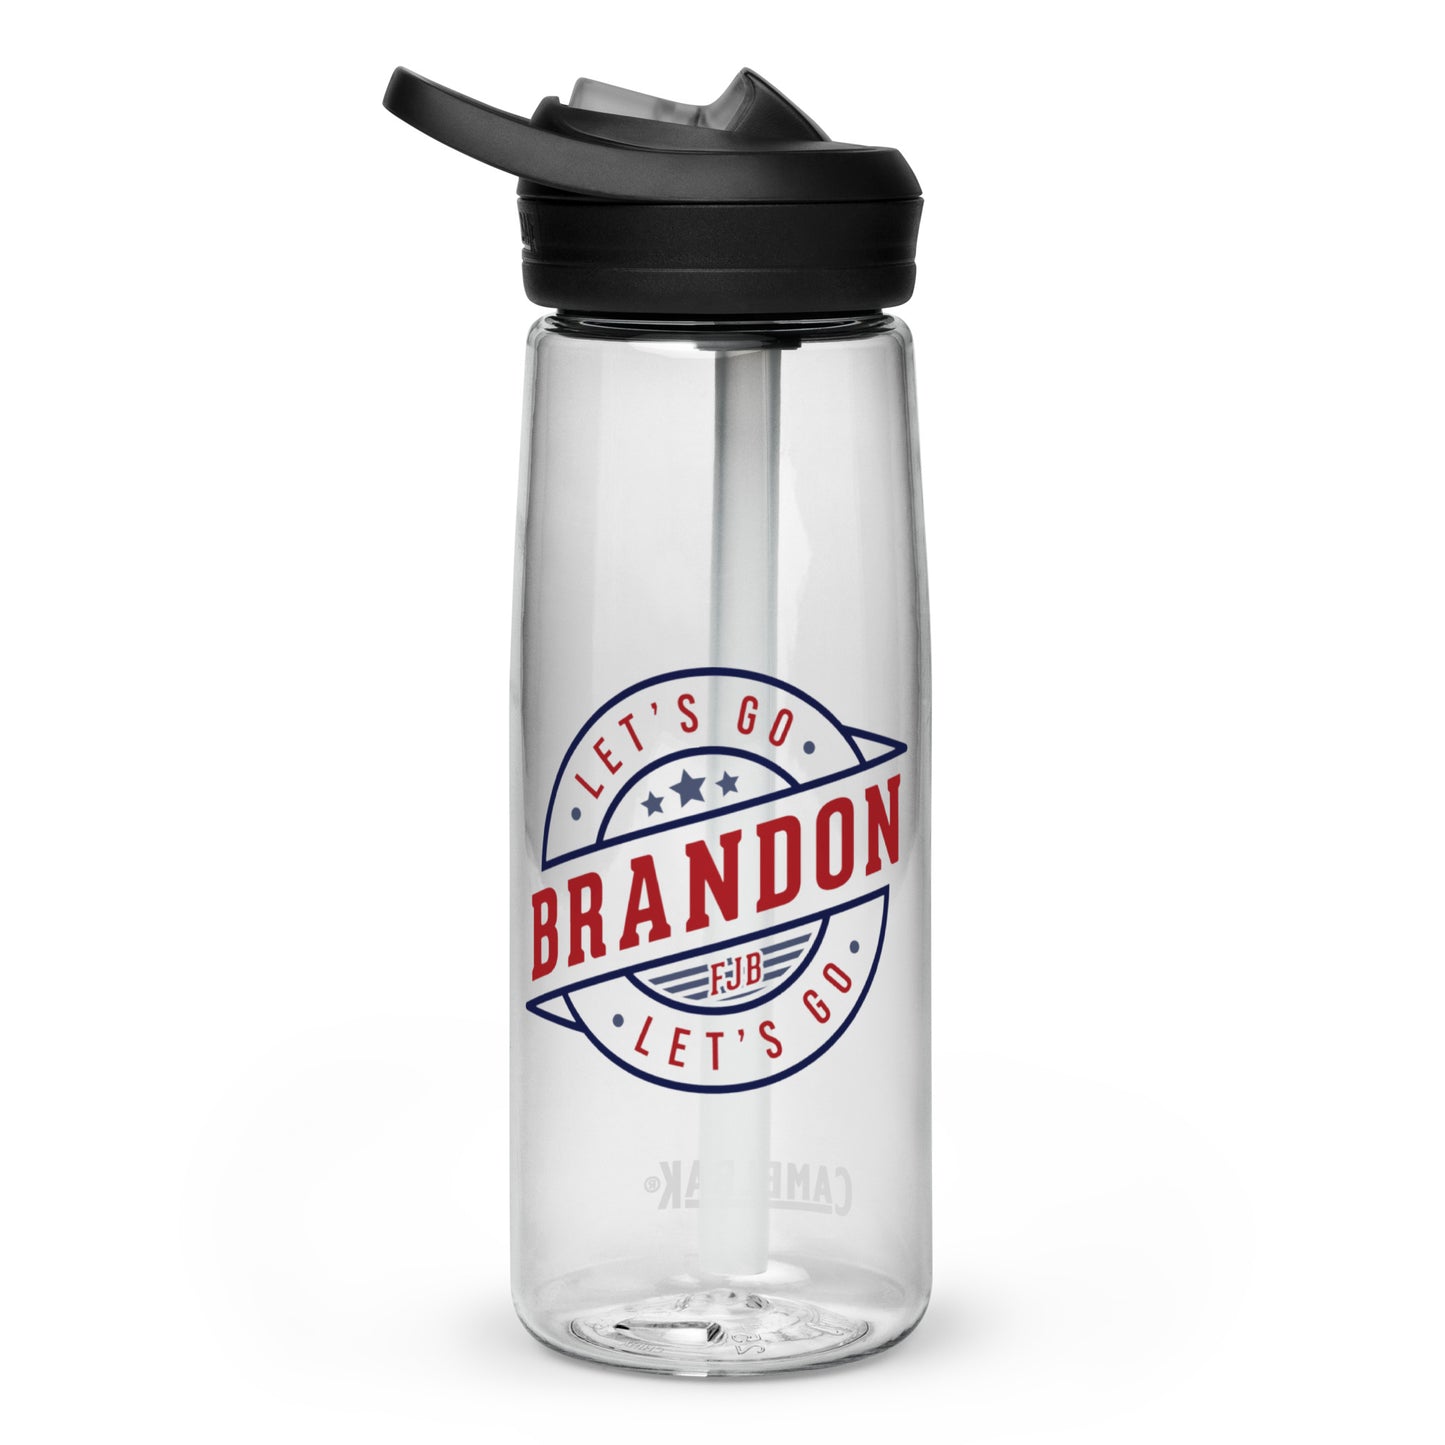 Let's Go Brandon Water Bottle